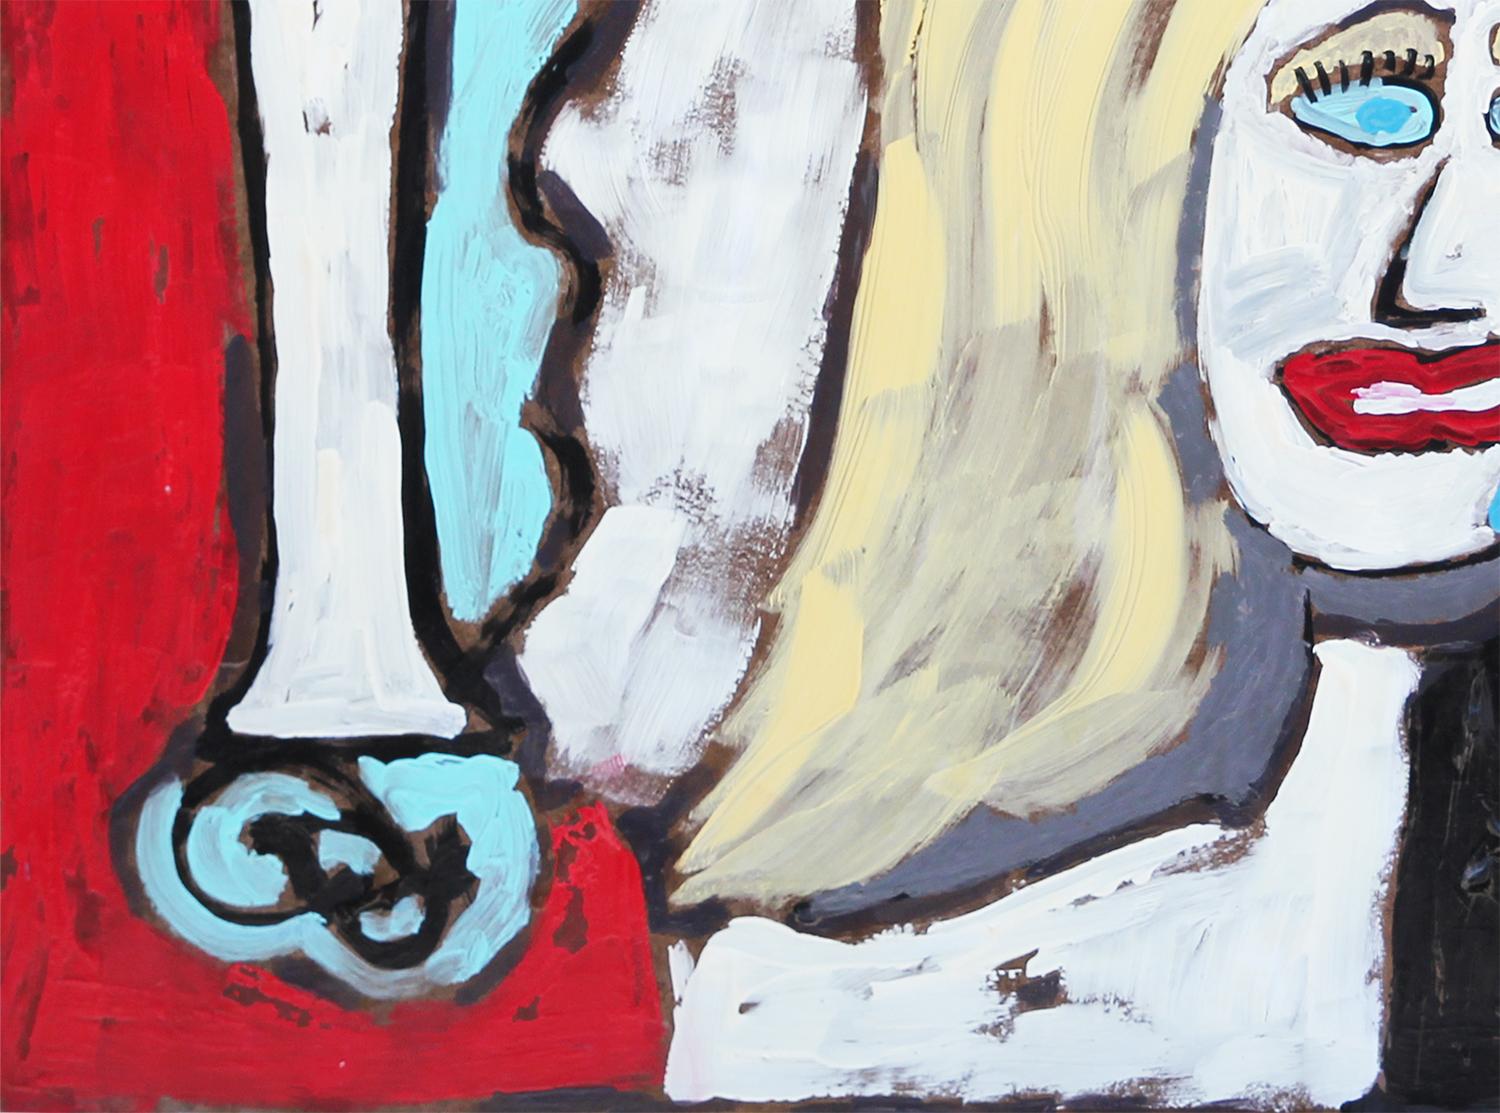 Rotes, blaues und gelbes abstraktes figuratives Gemälde des Inhabers von Reeves Art + Design und Künstlers Paul Reeves aus Houston, TX. Das querformatige Gemälde zeigt eine blonde Frau mit rot geschminkten Lippen auf einer Bühne mit einem roten